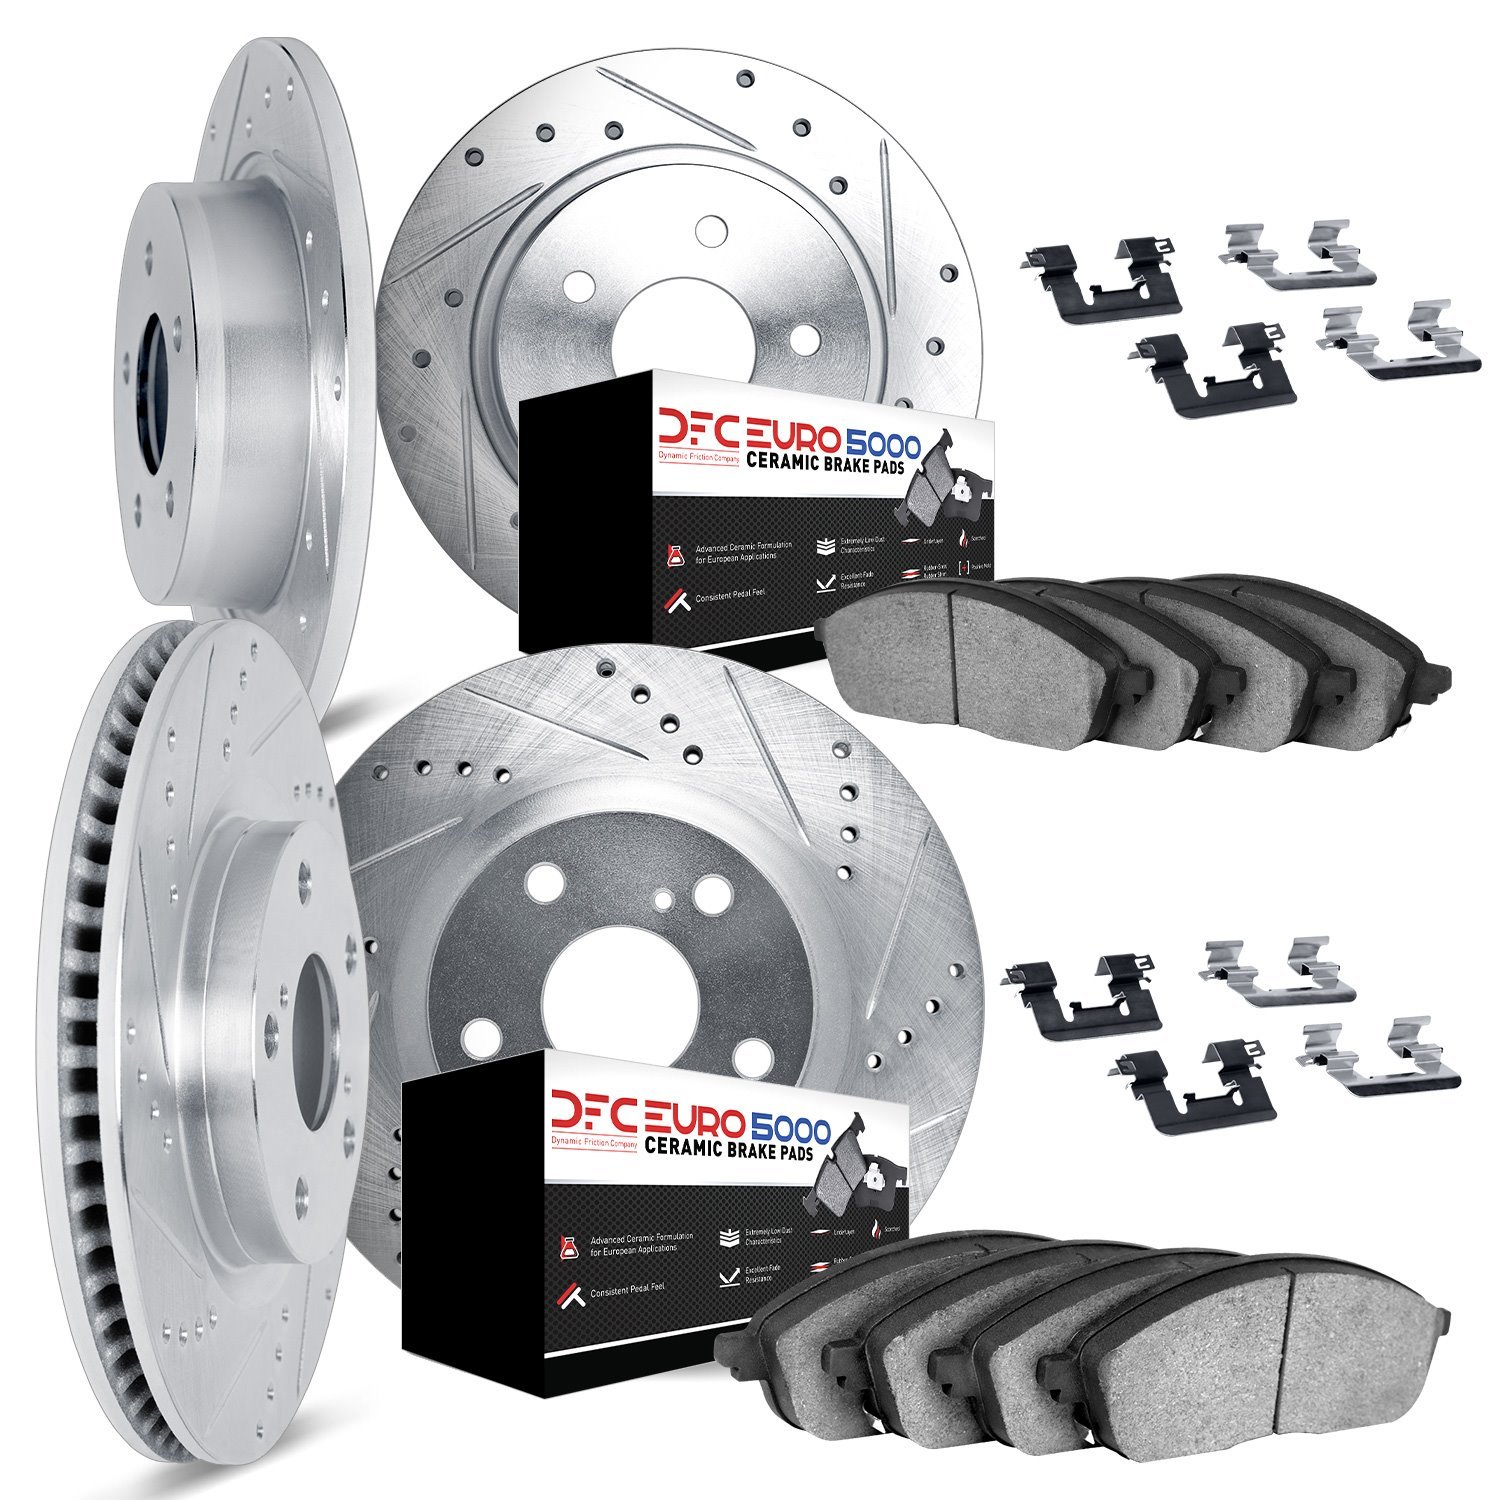 7614-67000 Drilled/Slotted Brake Rotors w/5000 Euro Ceramic Brake Pads Kit & Hardware [Silver], 2011-2019 Infiniti/Nissan, Posit